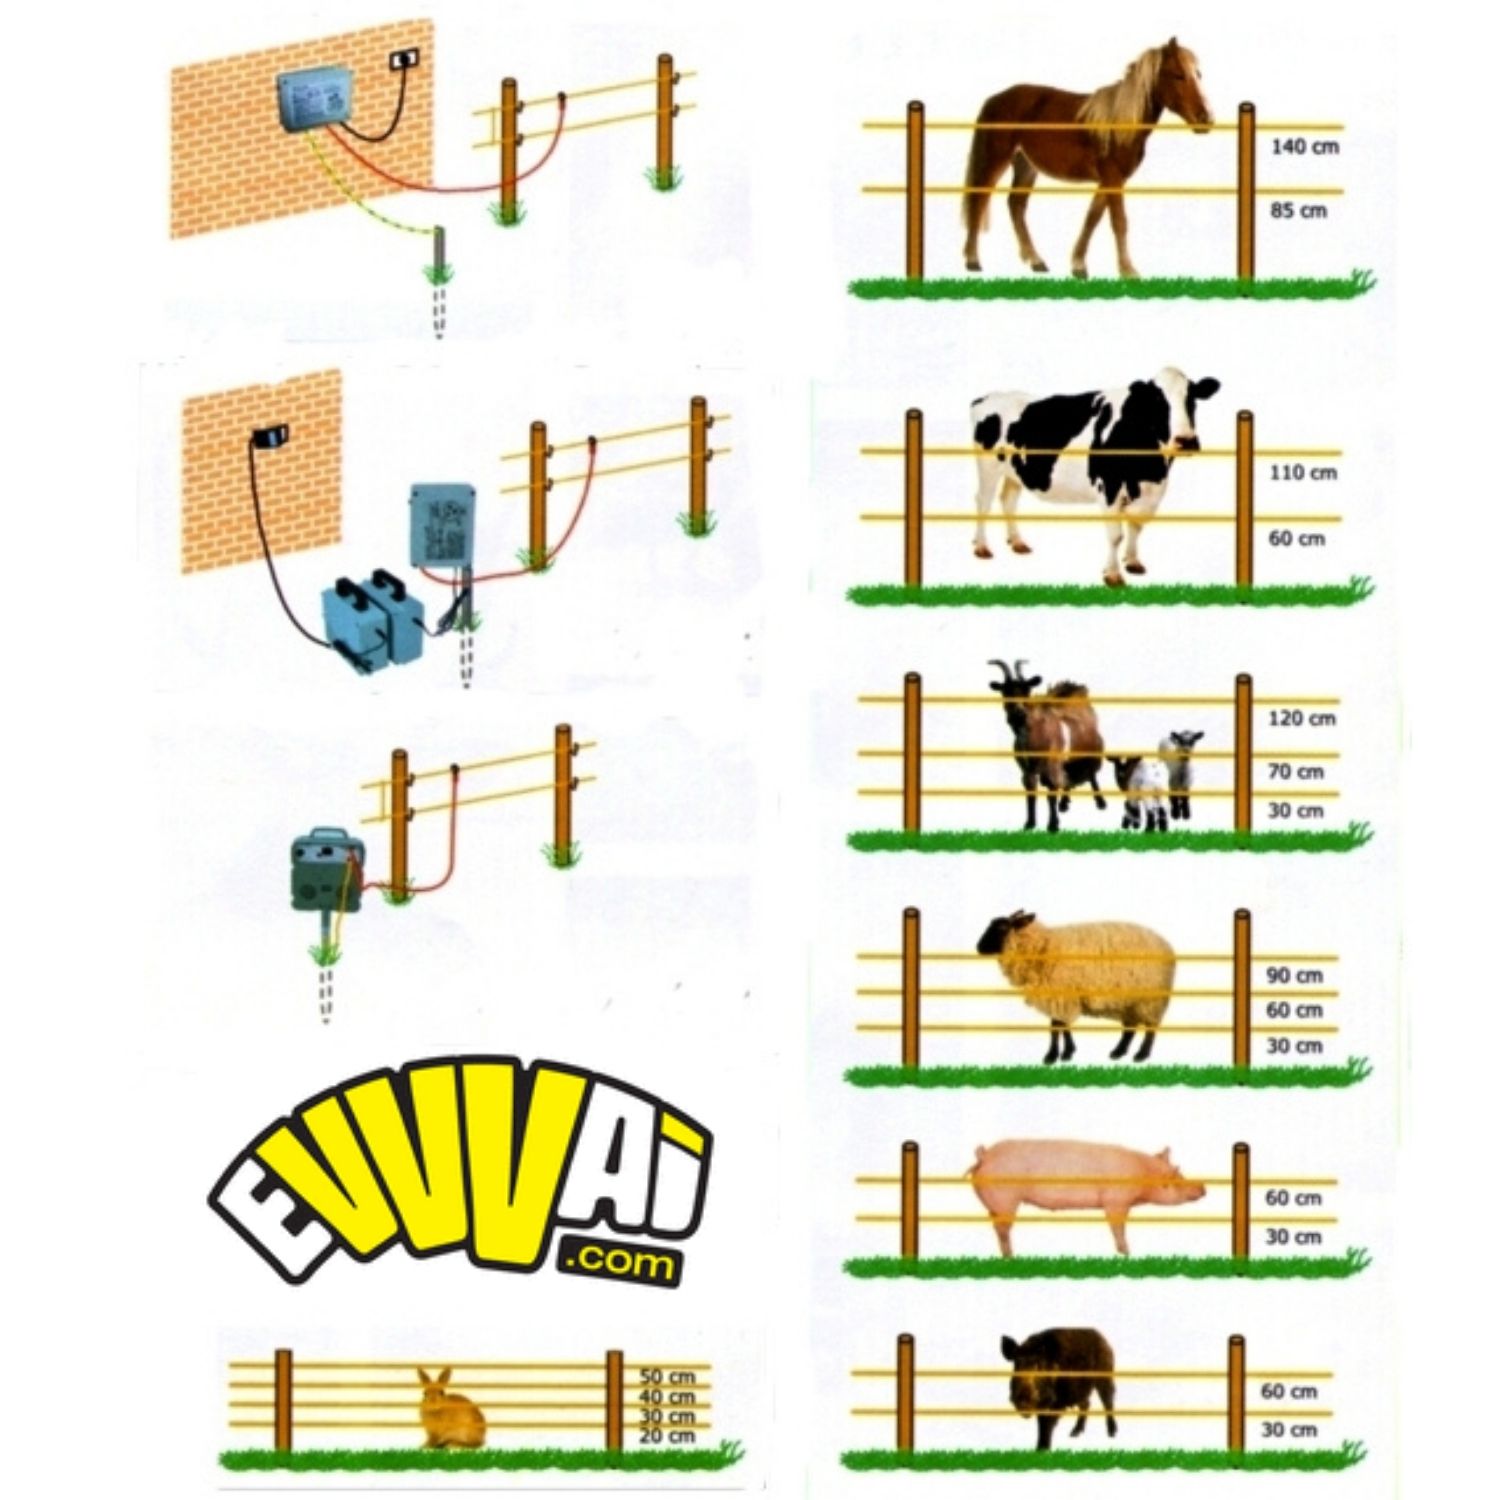 Costruzione recinto elettrico per animali selvatici, versione 3.0 -  Electric fence 3.0 